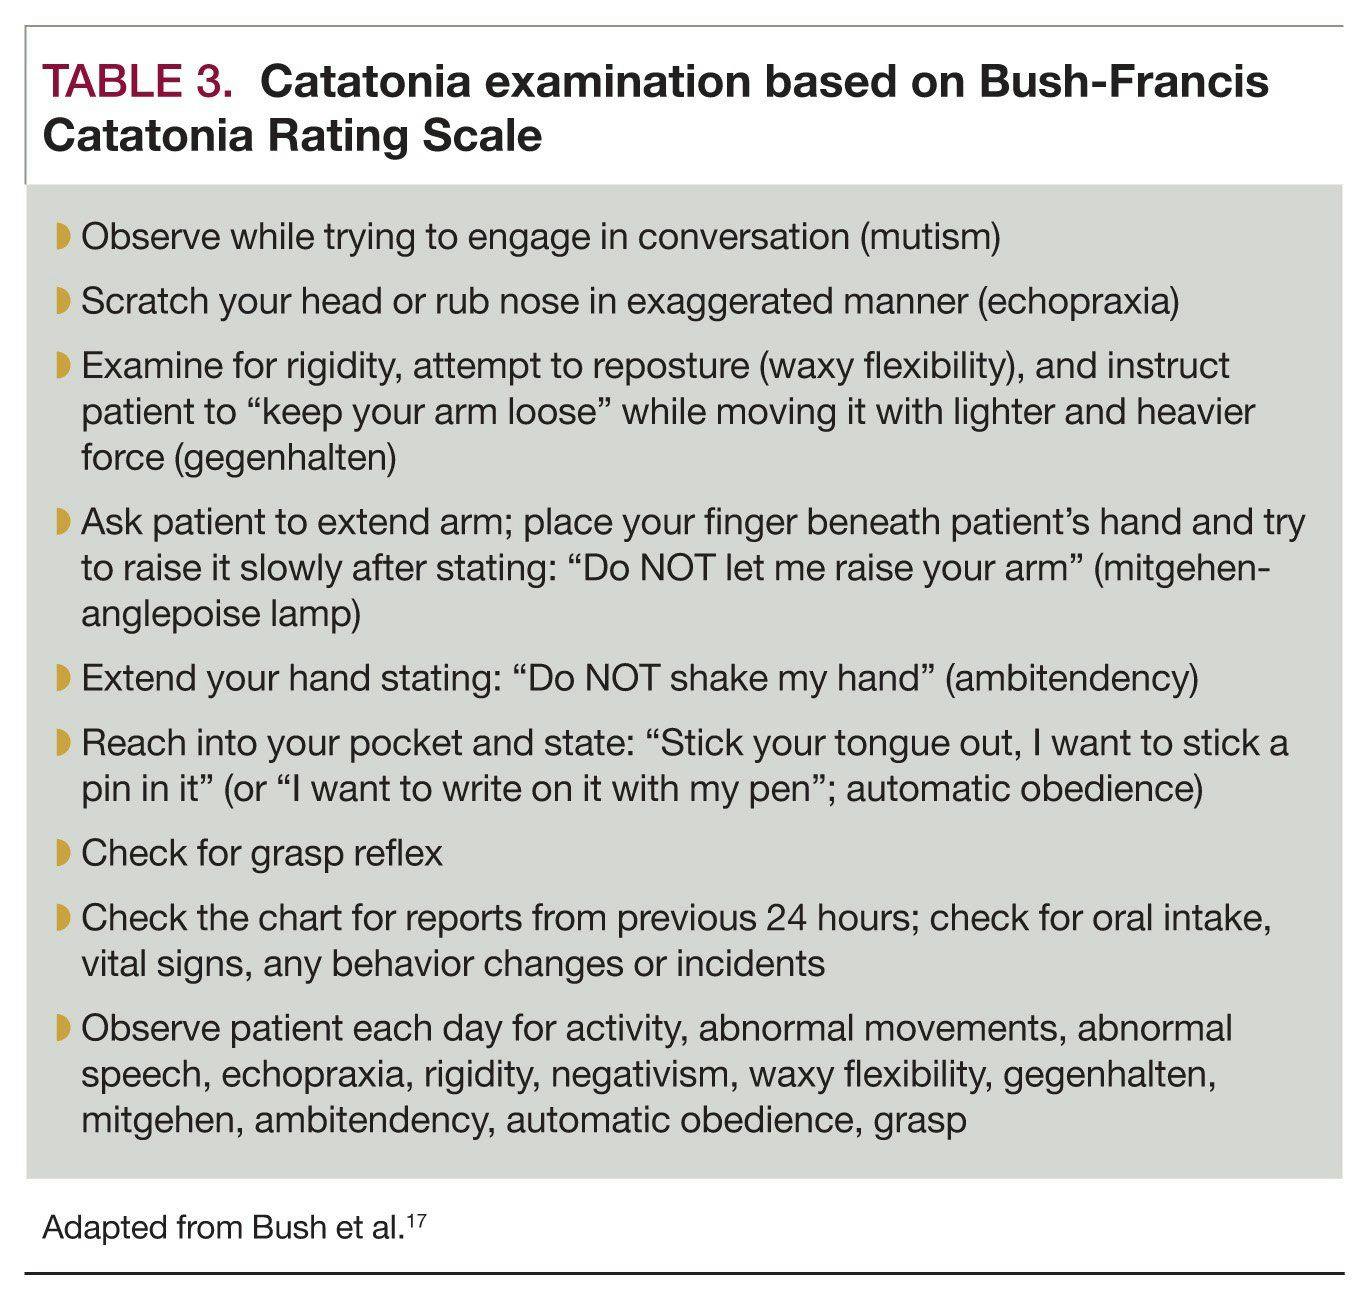 Catatonia examination based on Bush-Francis Catatonia Rating Scale